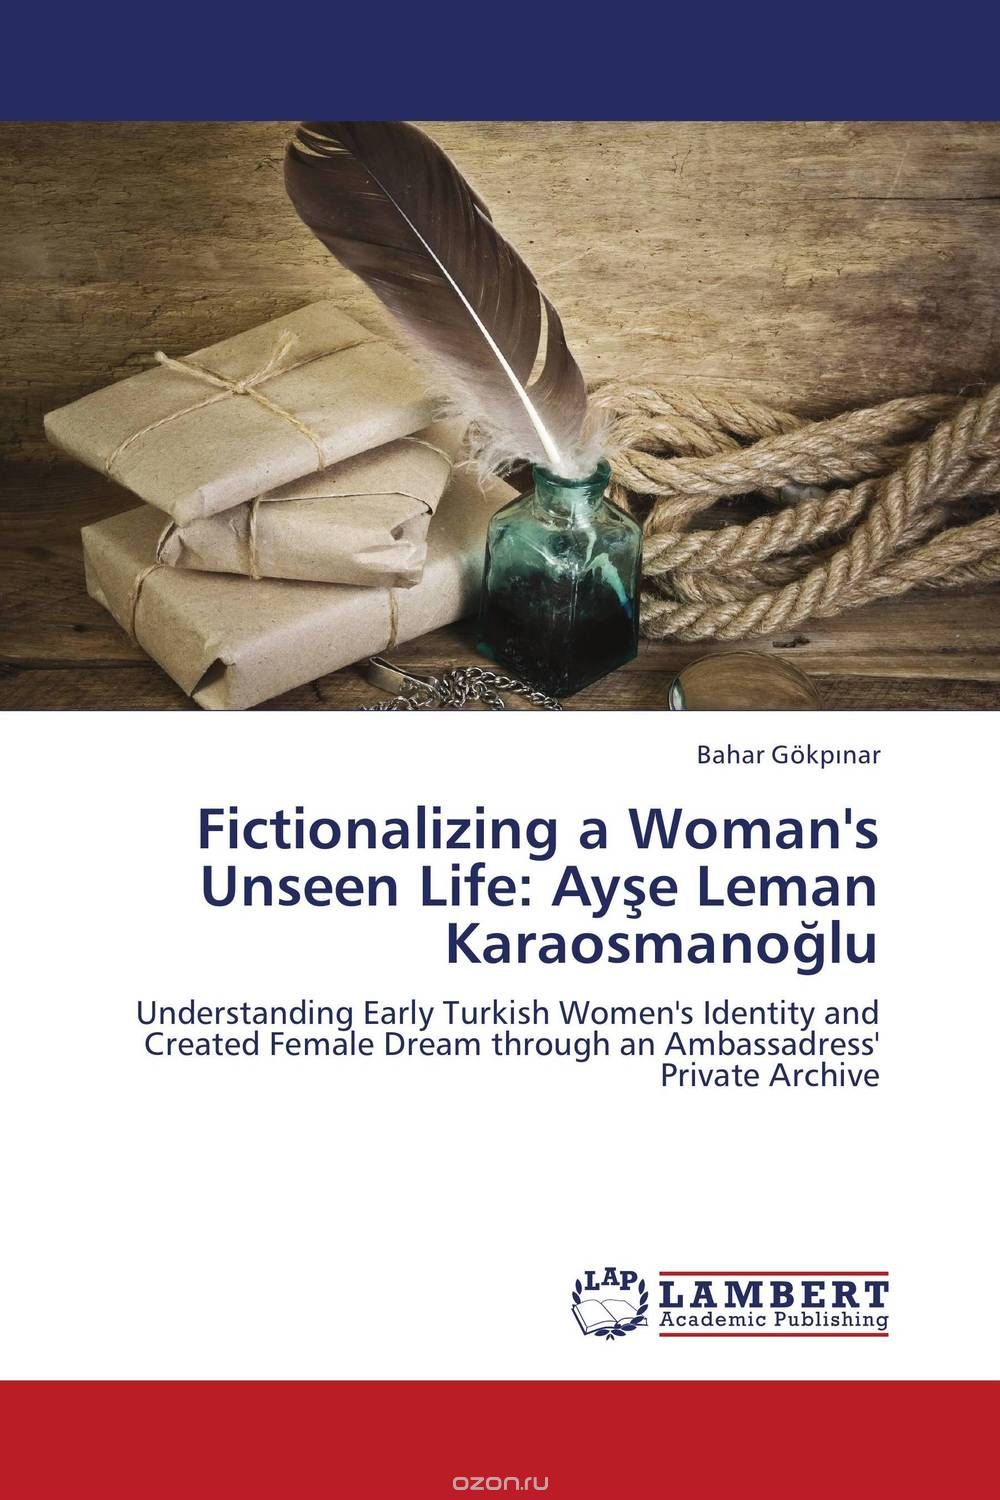 Скачать книгу "Fictionalizing a Woman's Unseen Life: Ayse Leman Karaosmanoglu"